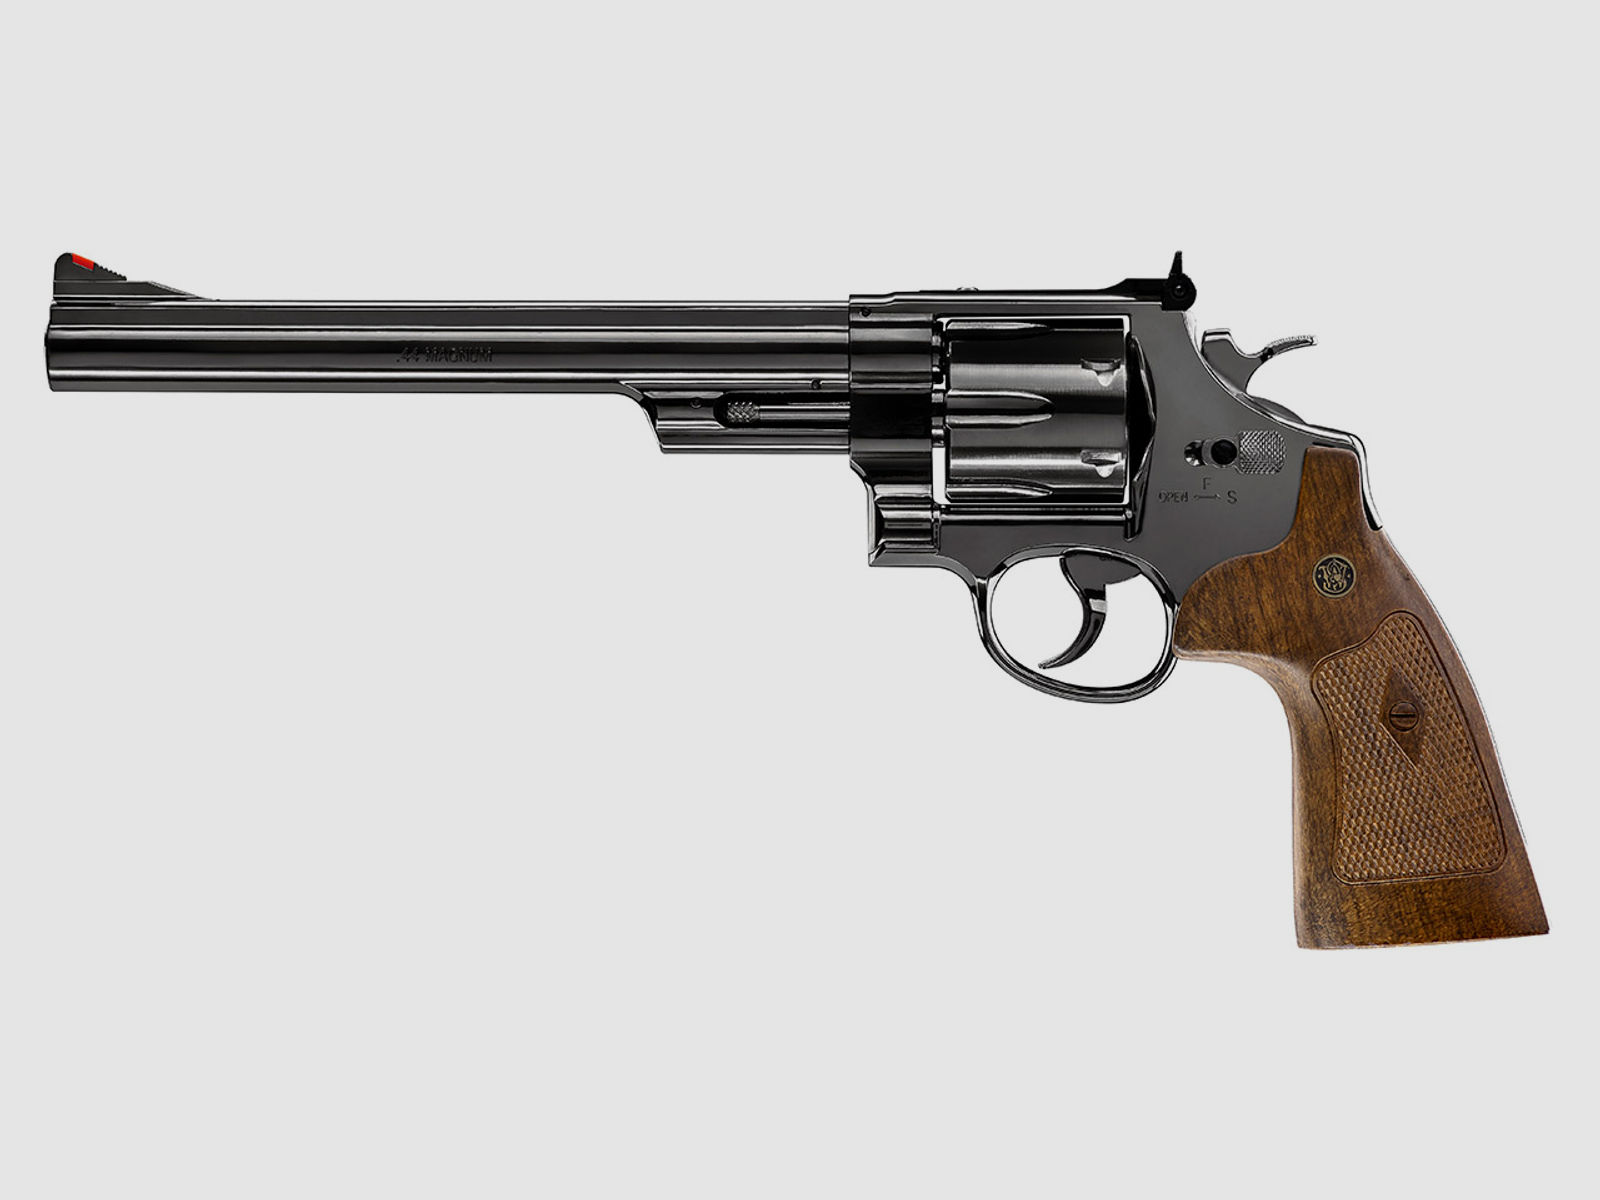 CO2 Revolver Smith & Wesson M29 8 3/8 Zoll hochglanzbrĂĽniert braune Griffschalen Kaliber 4,5 mm Diabolo (P18)